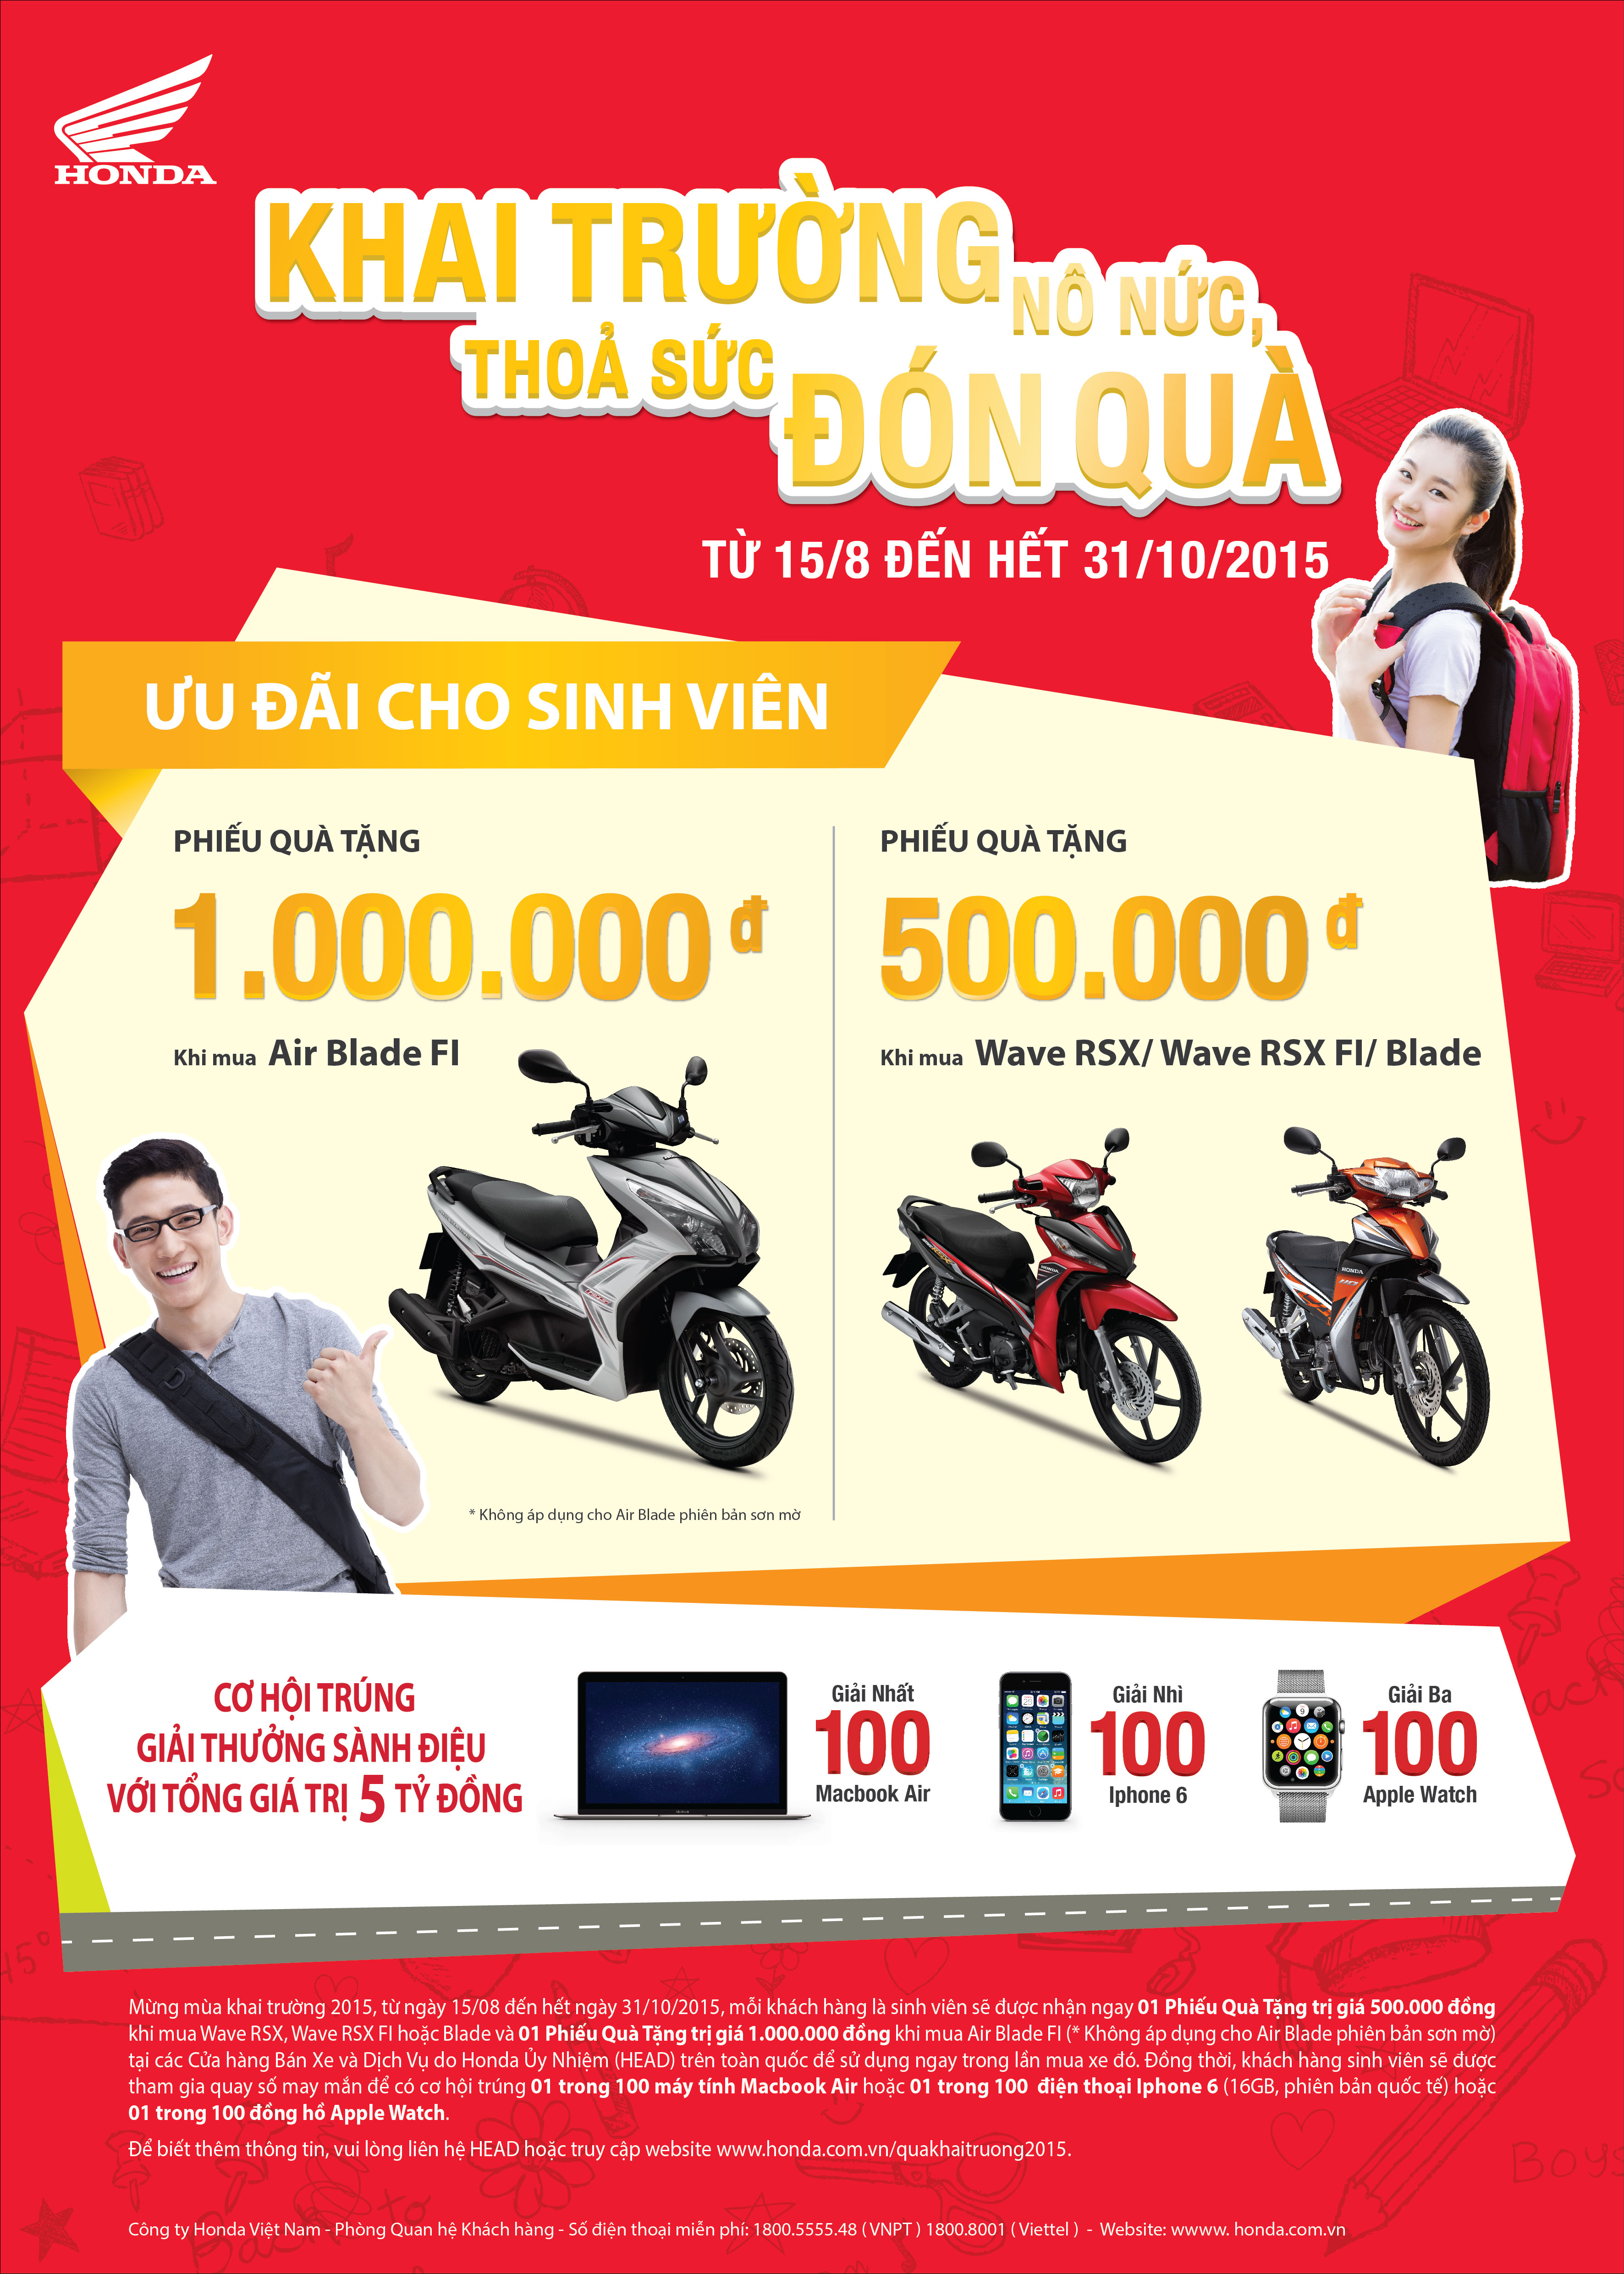 Honda Việt Nam ưu đãi khuyến mại 50 tỷ cho sinh viên